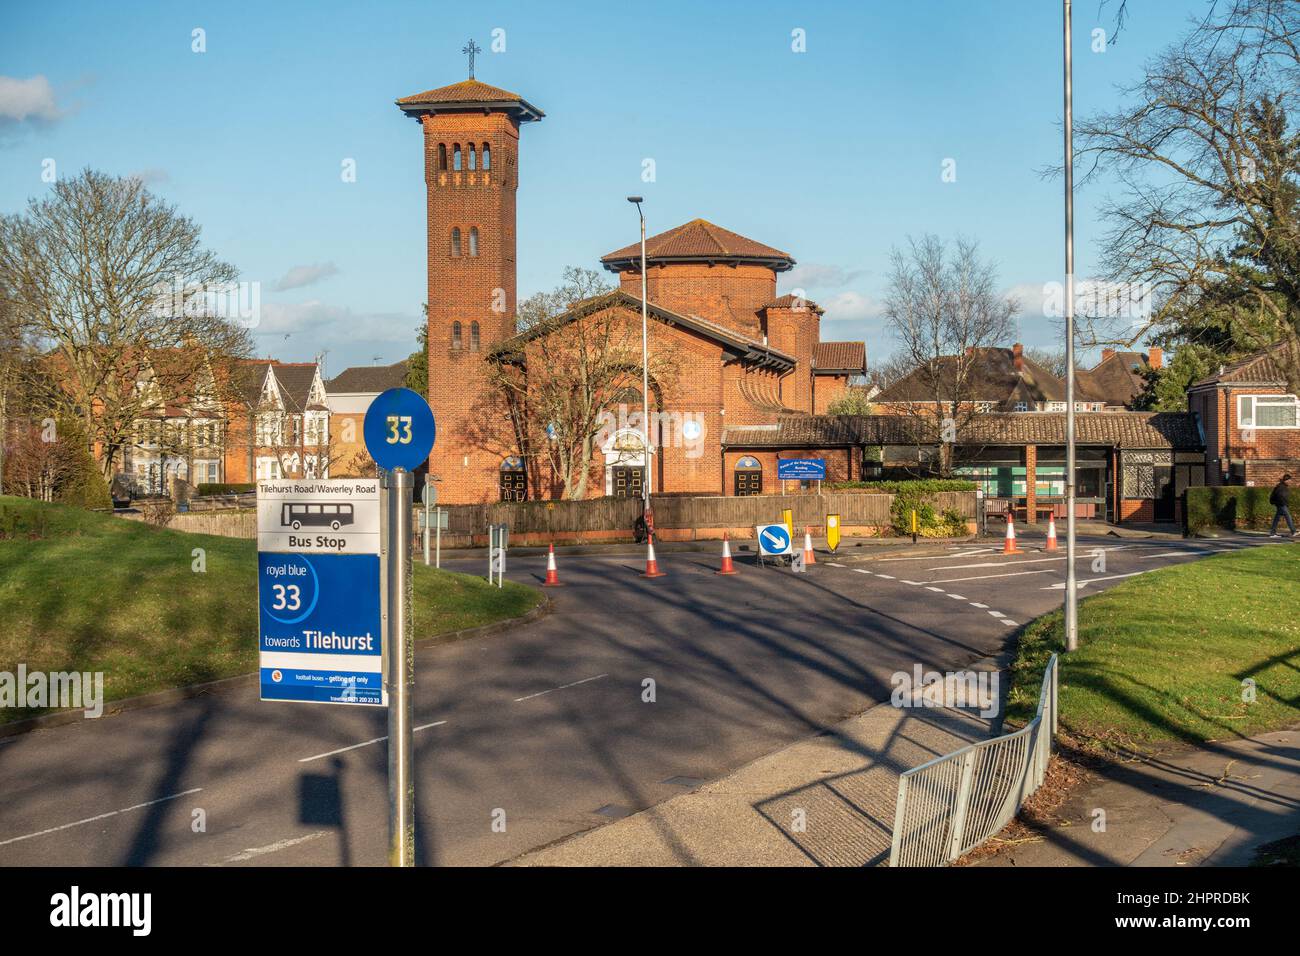 Bushaltestelle Nr. 33 vor der katholischen Kirche der englischen Märtyrer in Tilehurst, Reading, Großbritannien. Kegel und Straßenschilder im Hintergrund lenken den Verkehr ab. Stockfoto